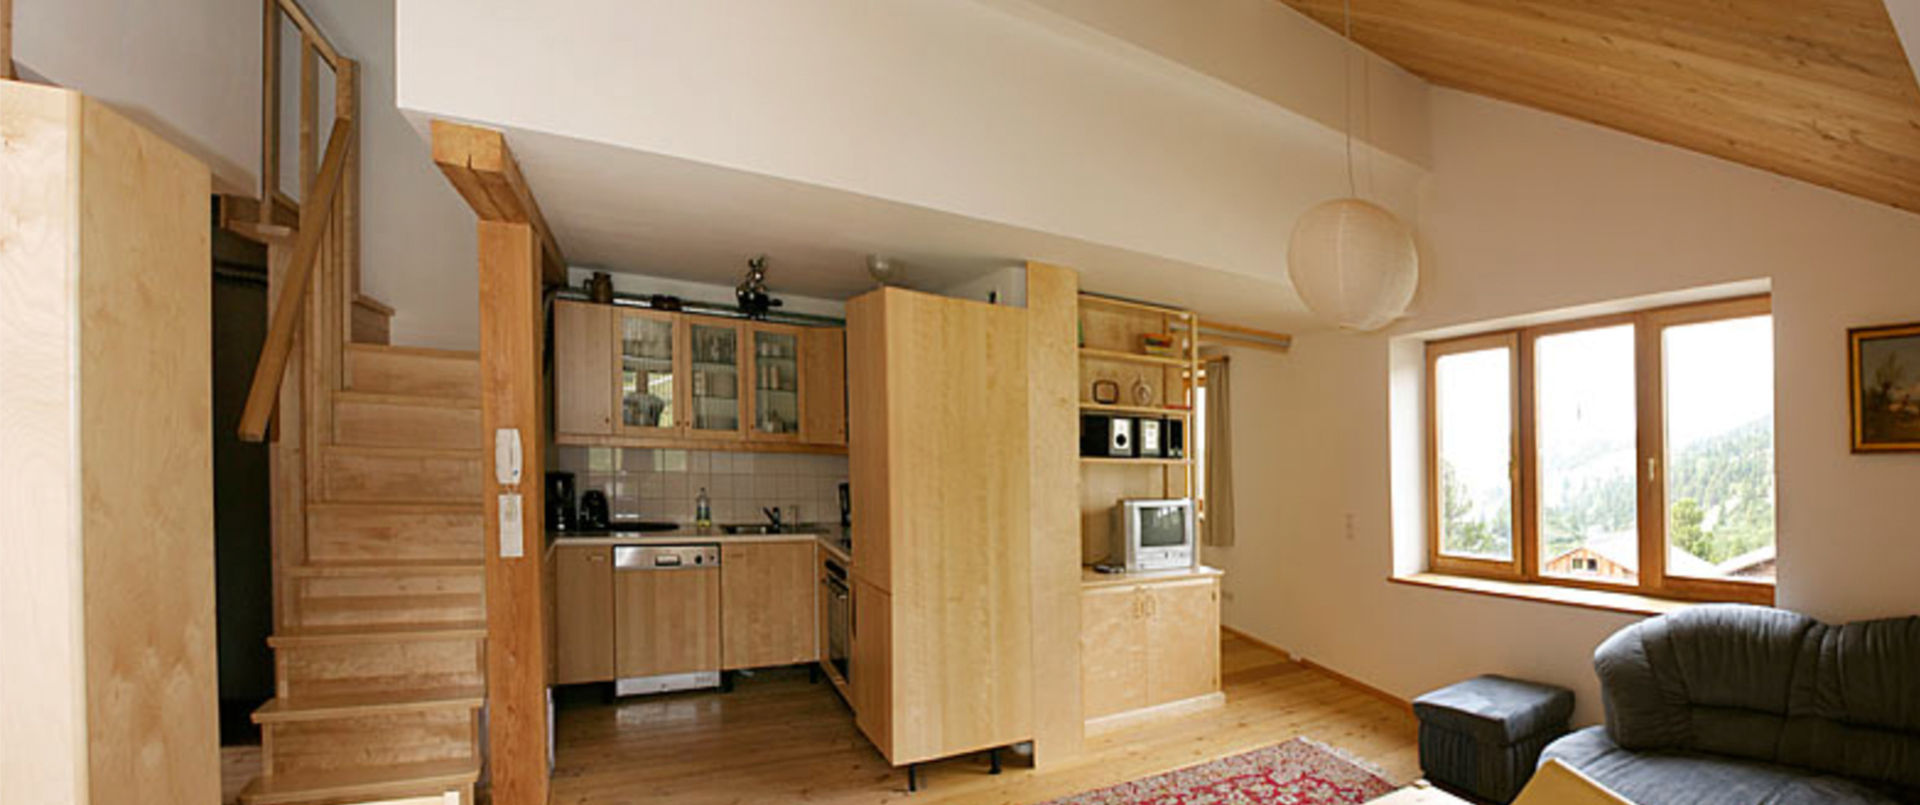 Ferienhaus Meilinger in Obertauern – Wohnbereich und Küche der Wohnung2 im ersten Stock